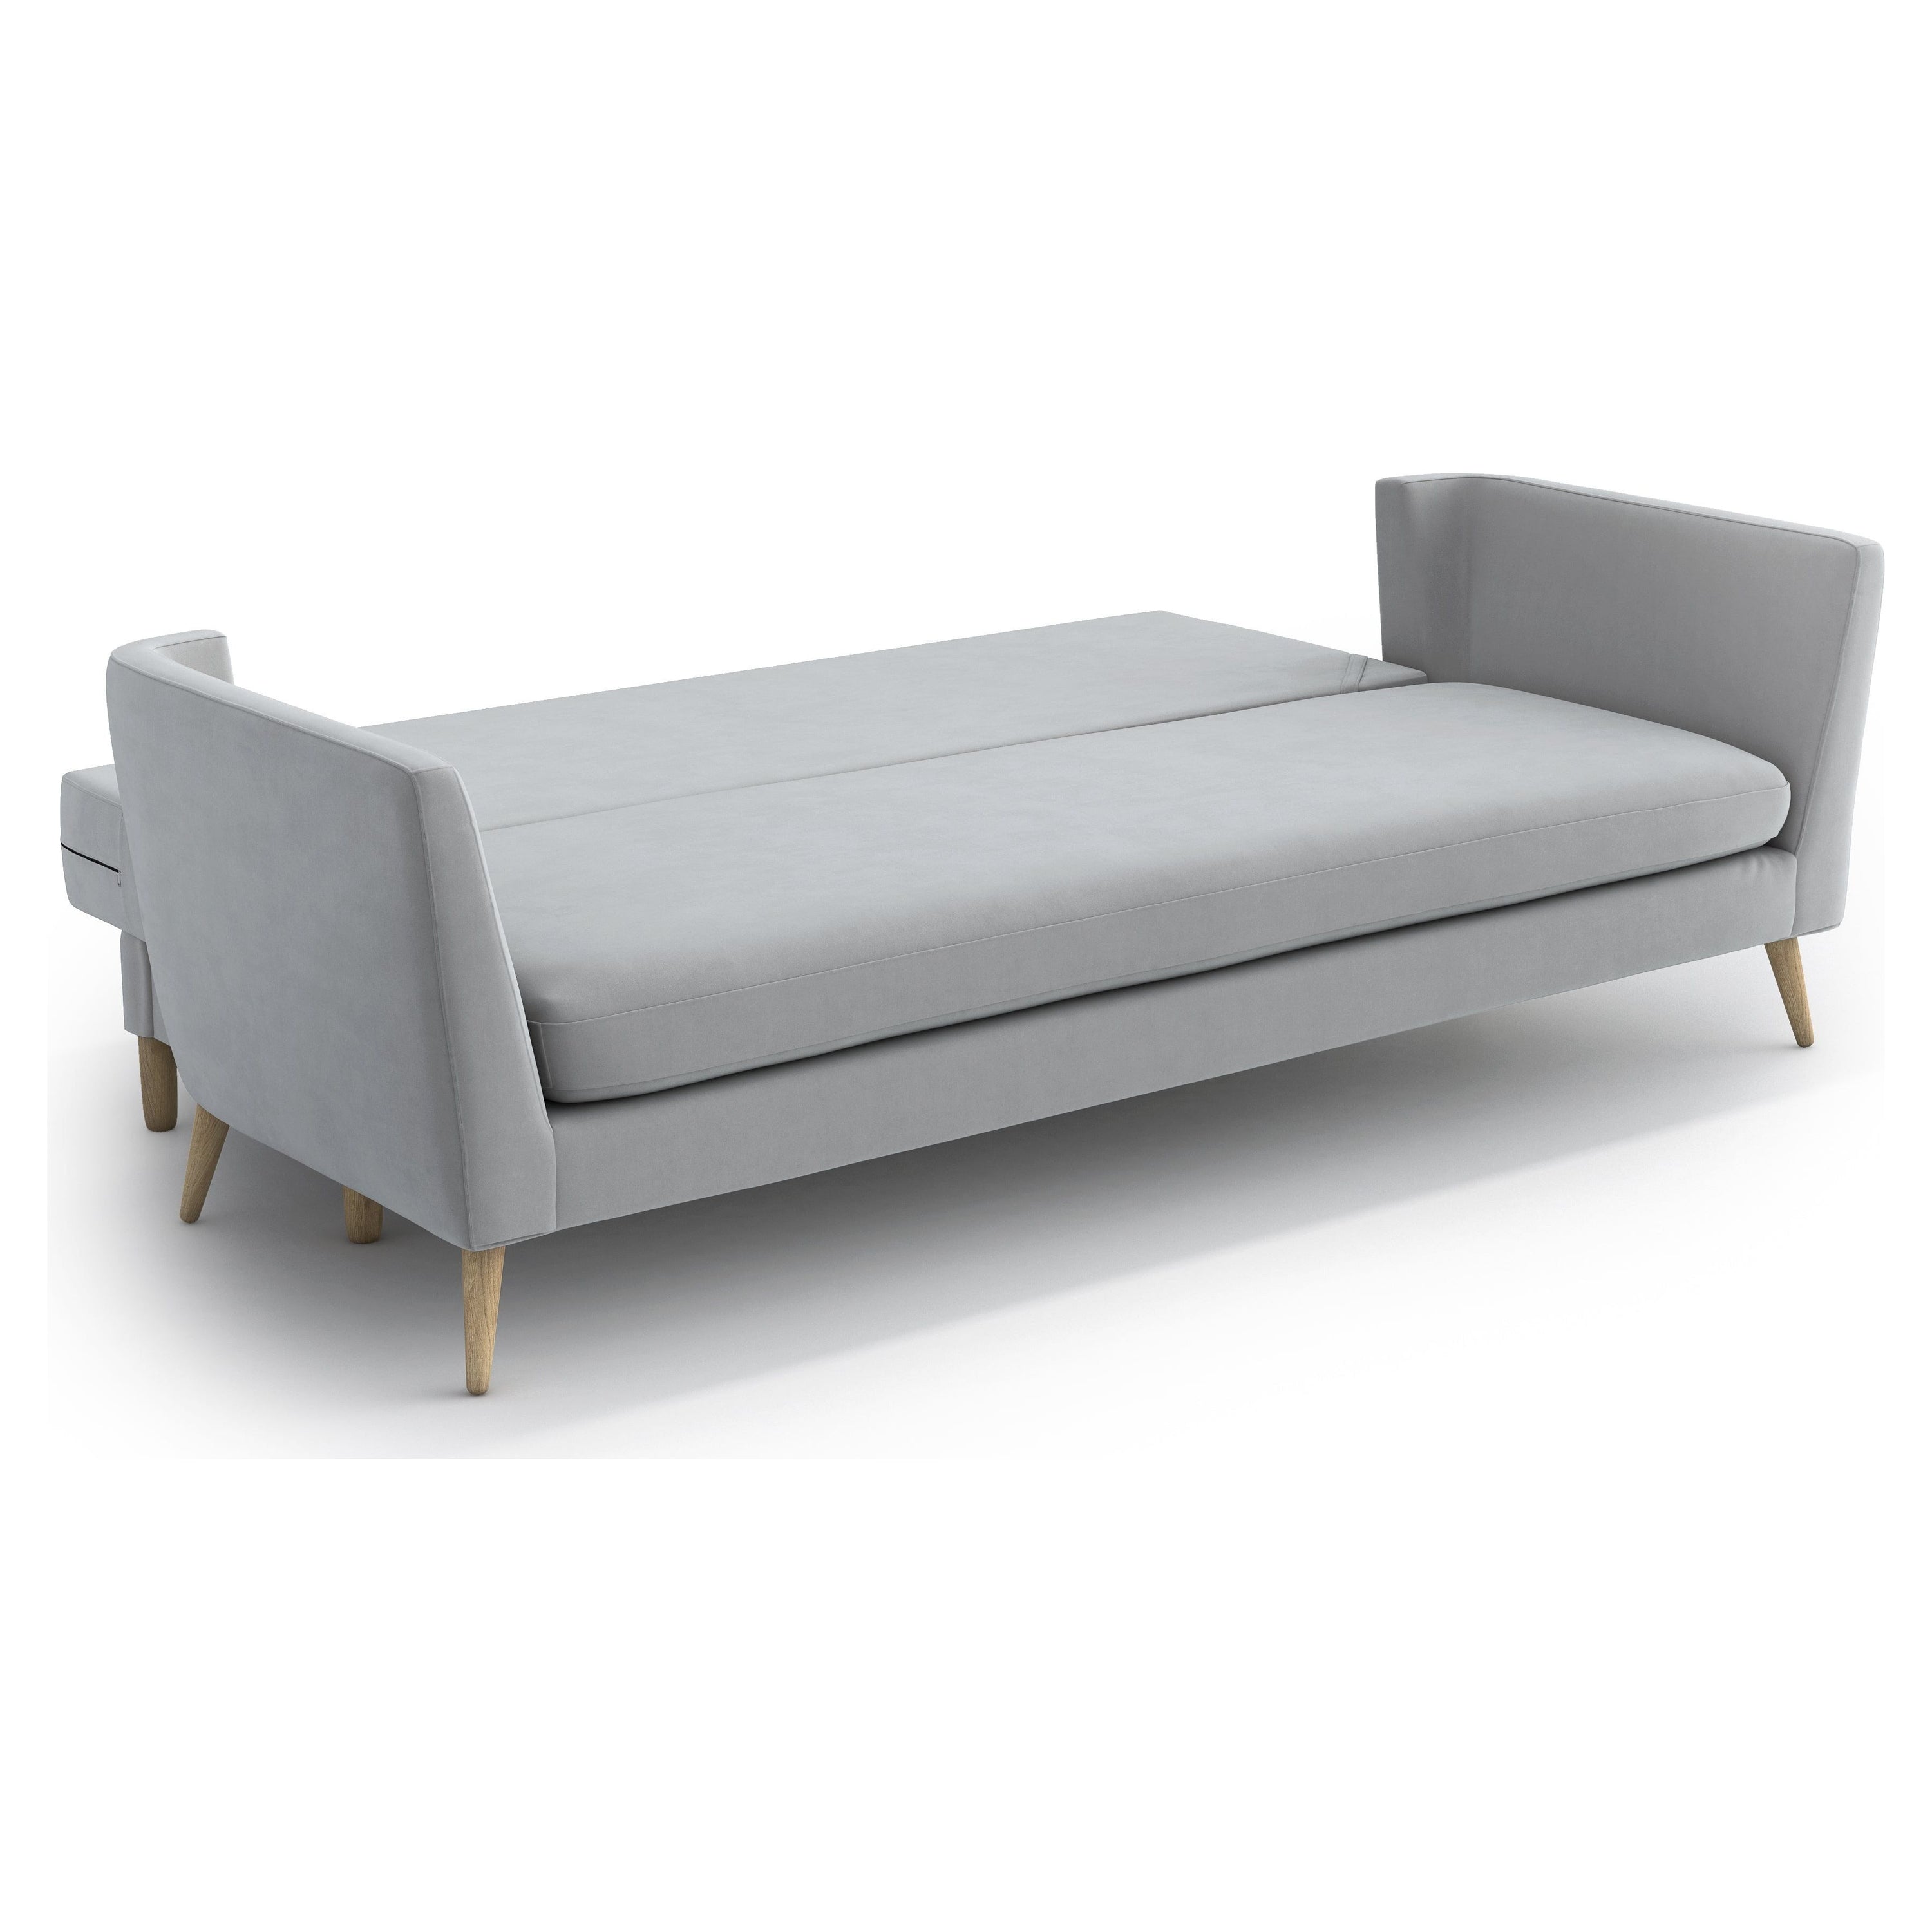 JANE 3 vietų sofa lova, šviesiai pilka spalva